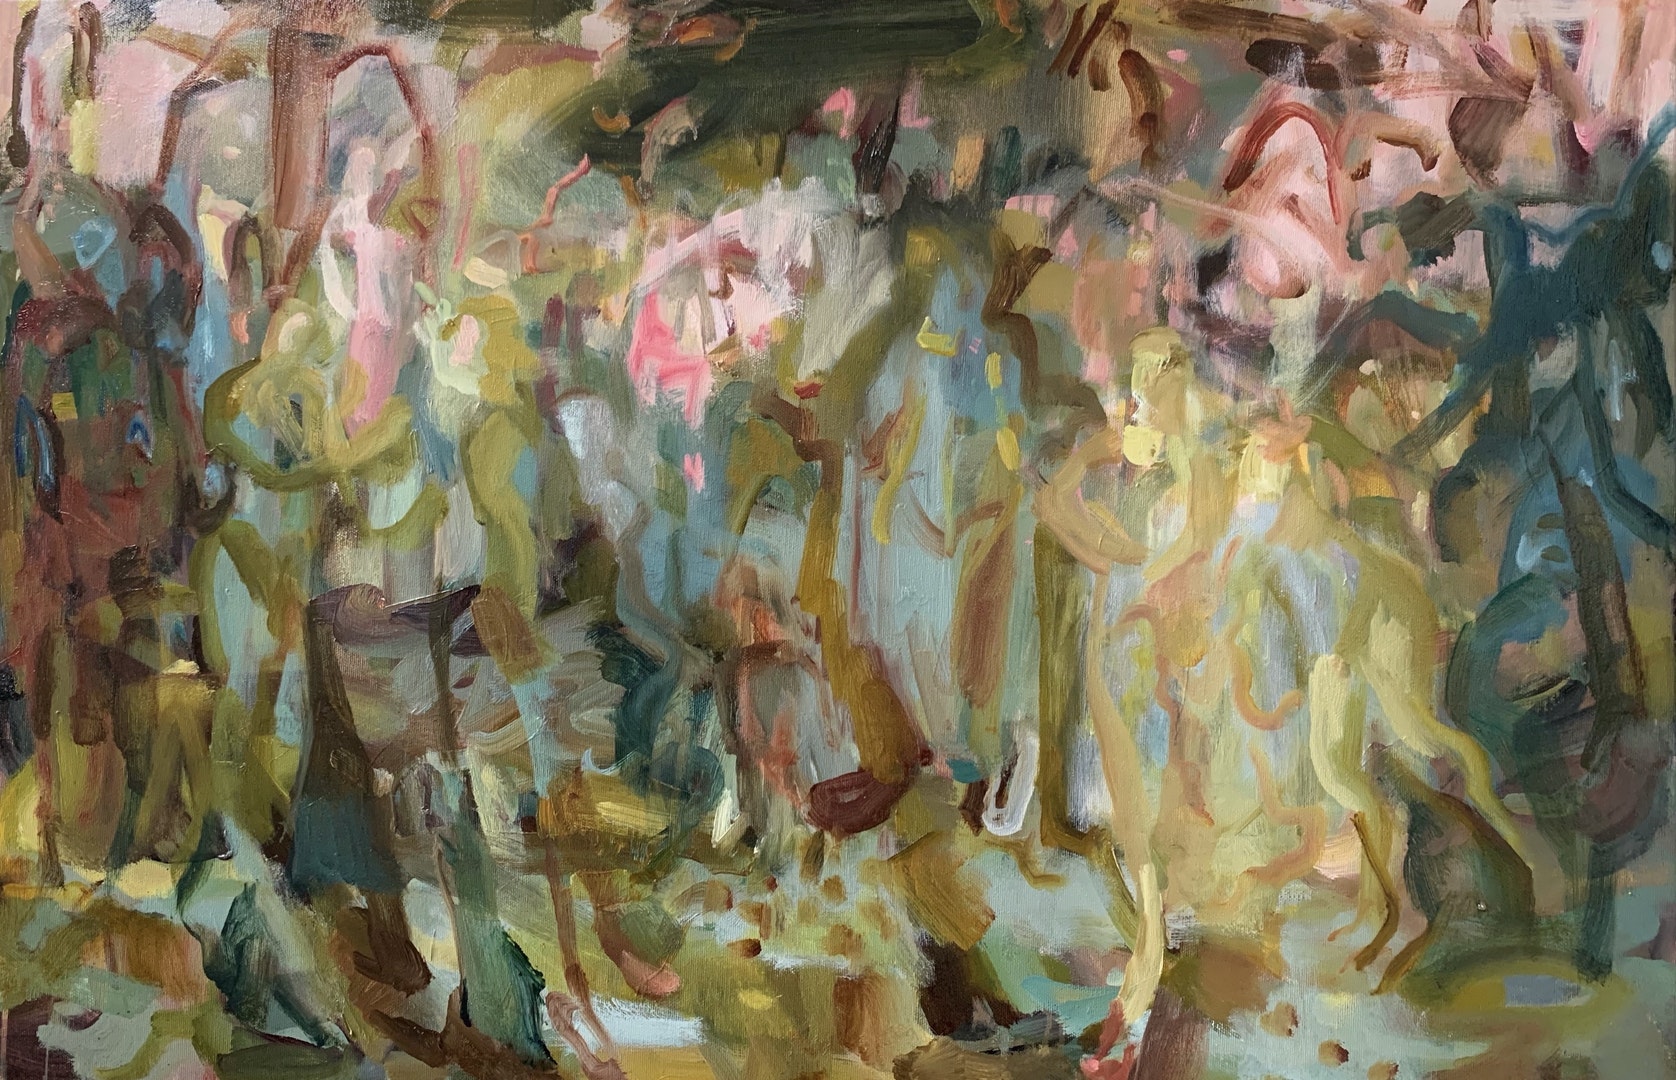 'Flora's Gaze', Lucy Threlfall, Oil on canvas, 70 x 50 cm